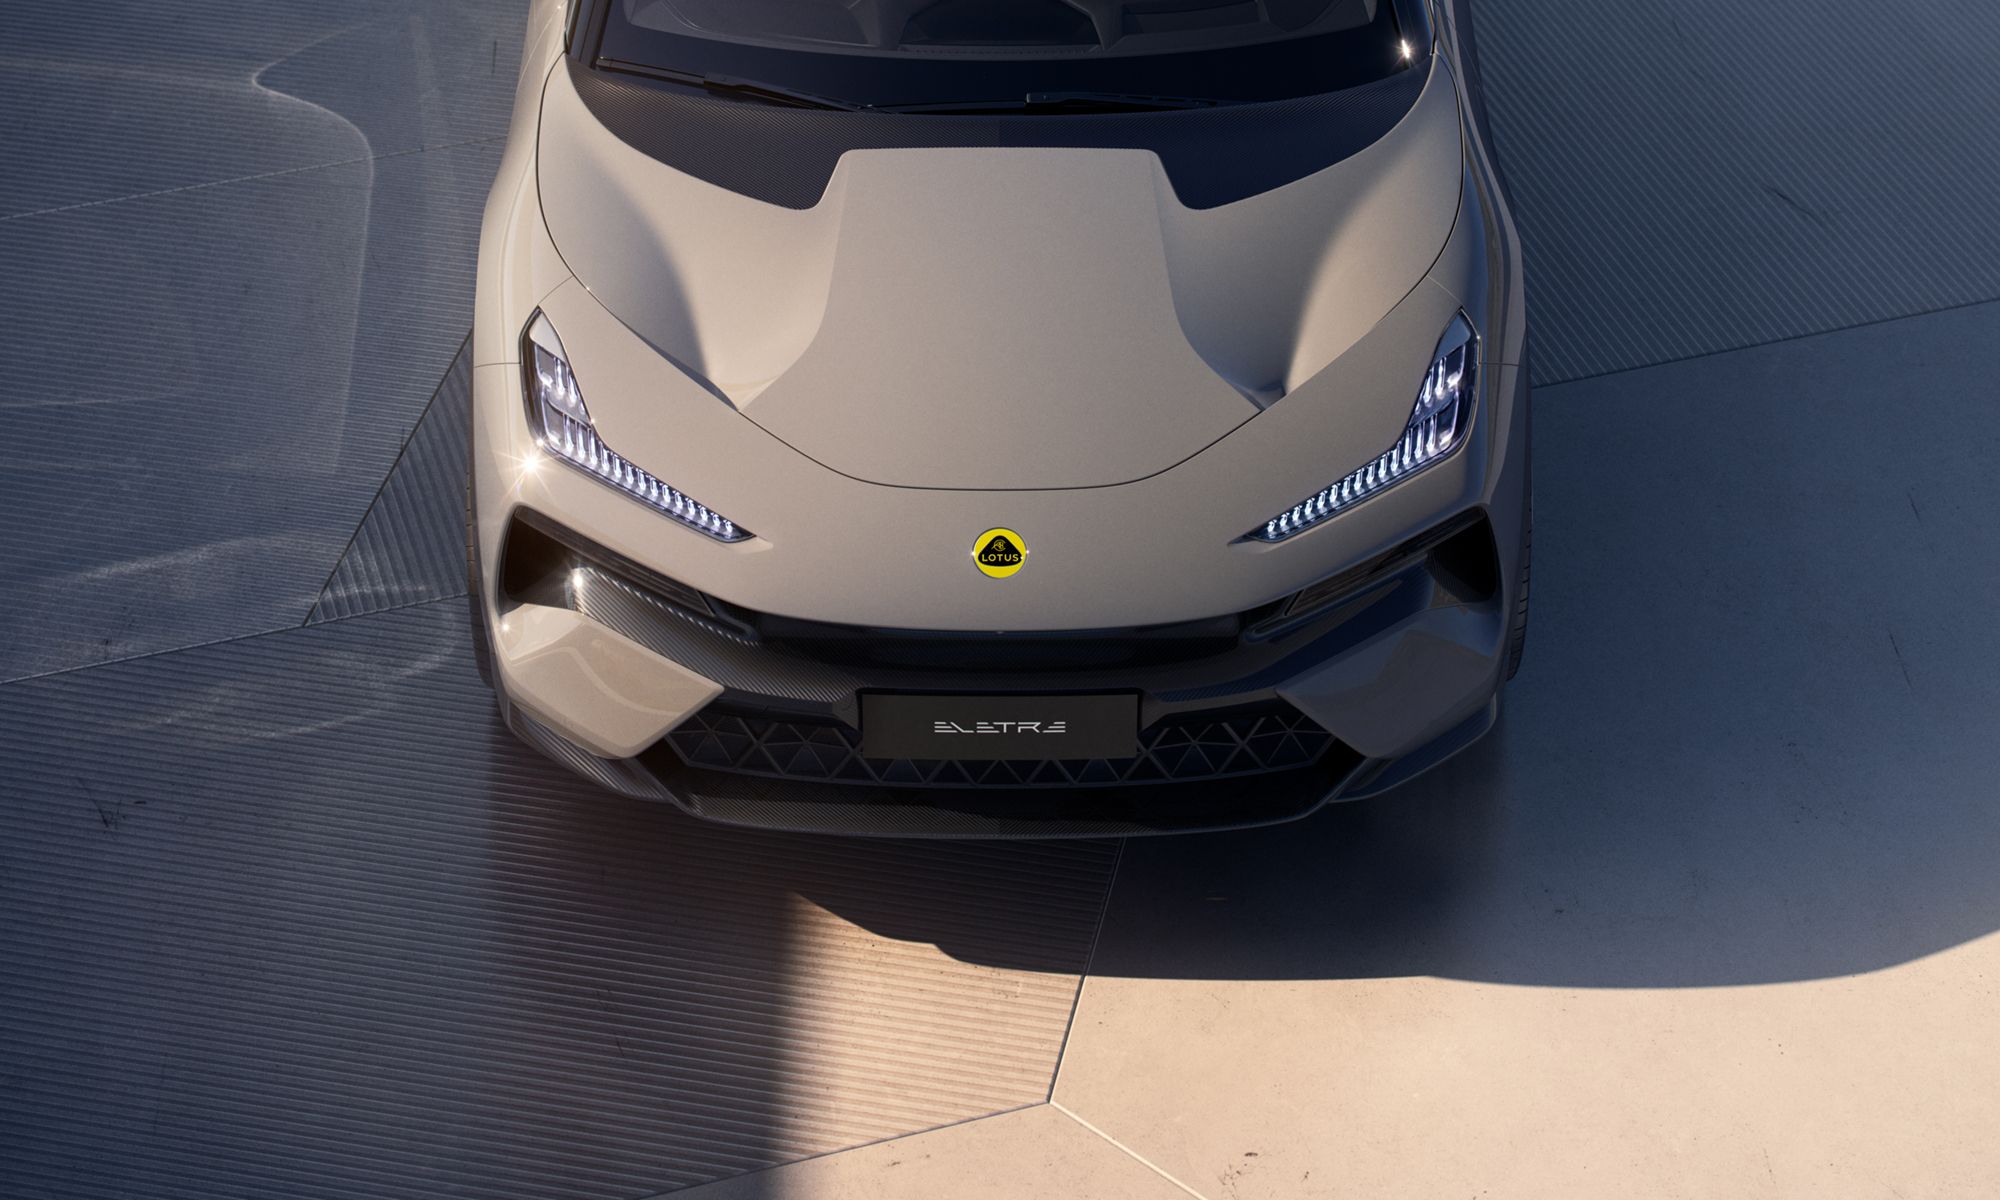 Financieramente, Lotus no está pasando por su mejor momento, ya que la inversión en el desarrollo de coches eléctricos ha sido elevada.